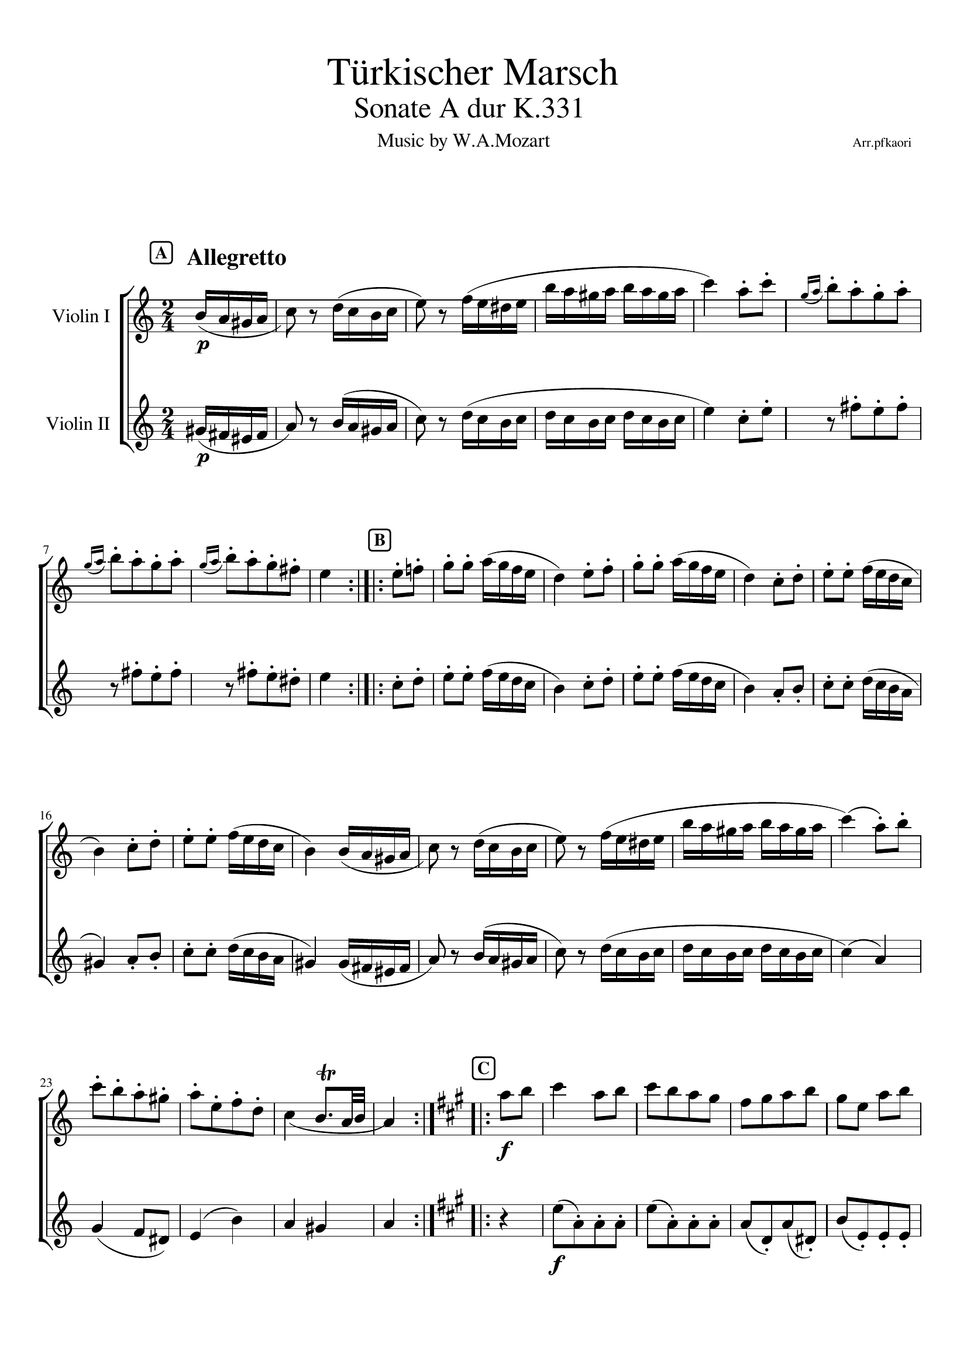 モーツァルト - トルコ行進曲 (ヴァイオリンデュオ/無伴奏) by pfkaori